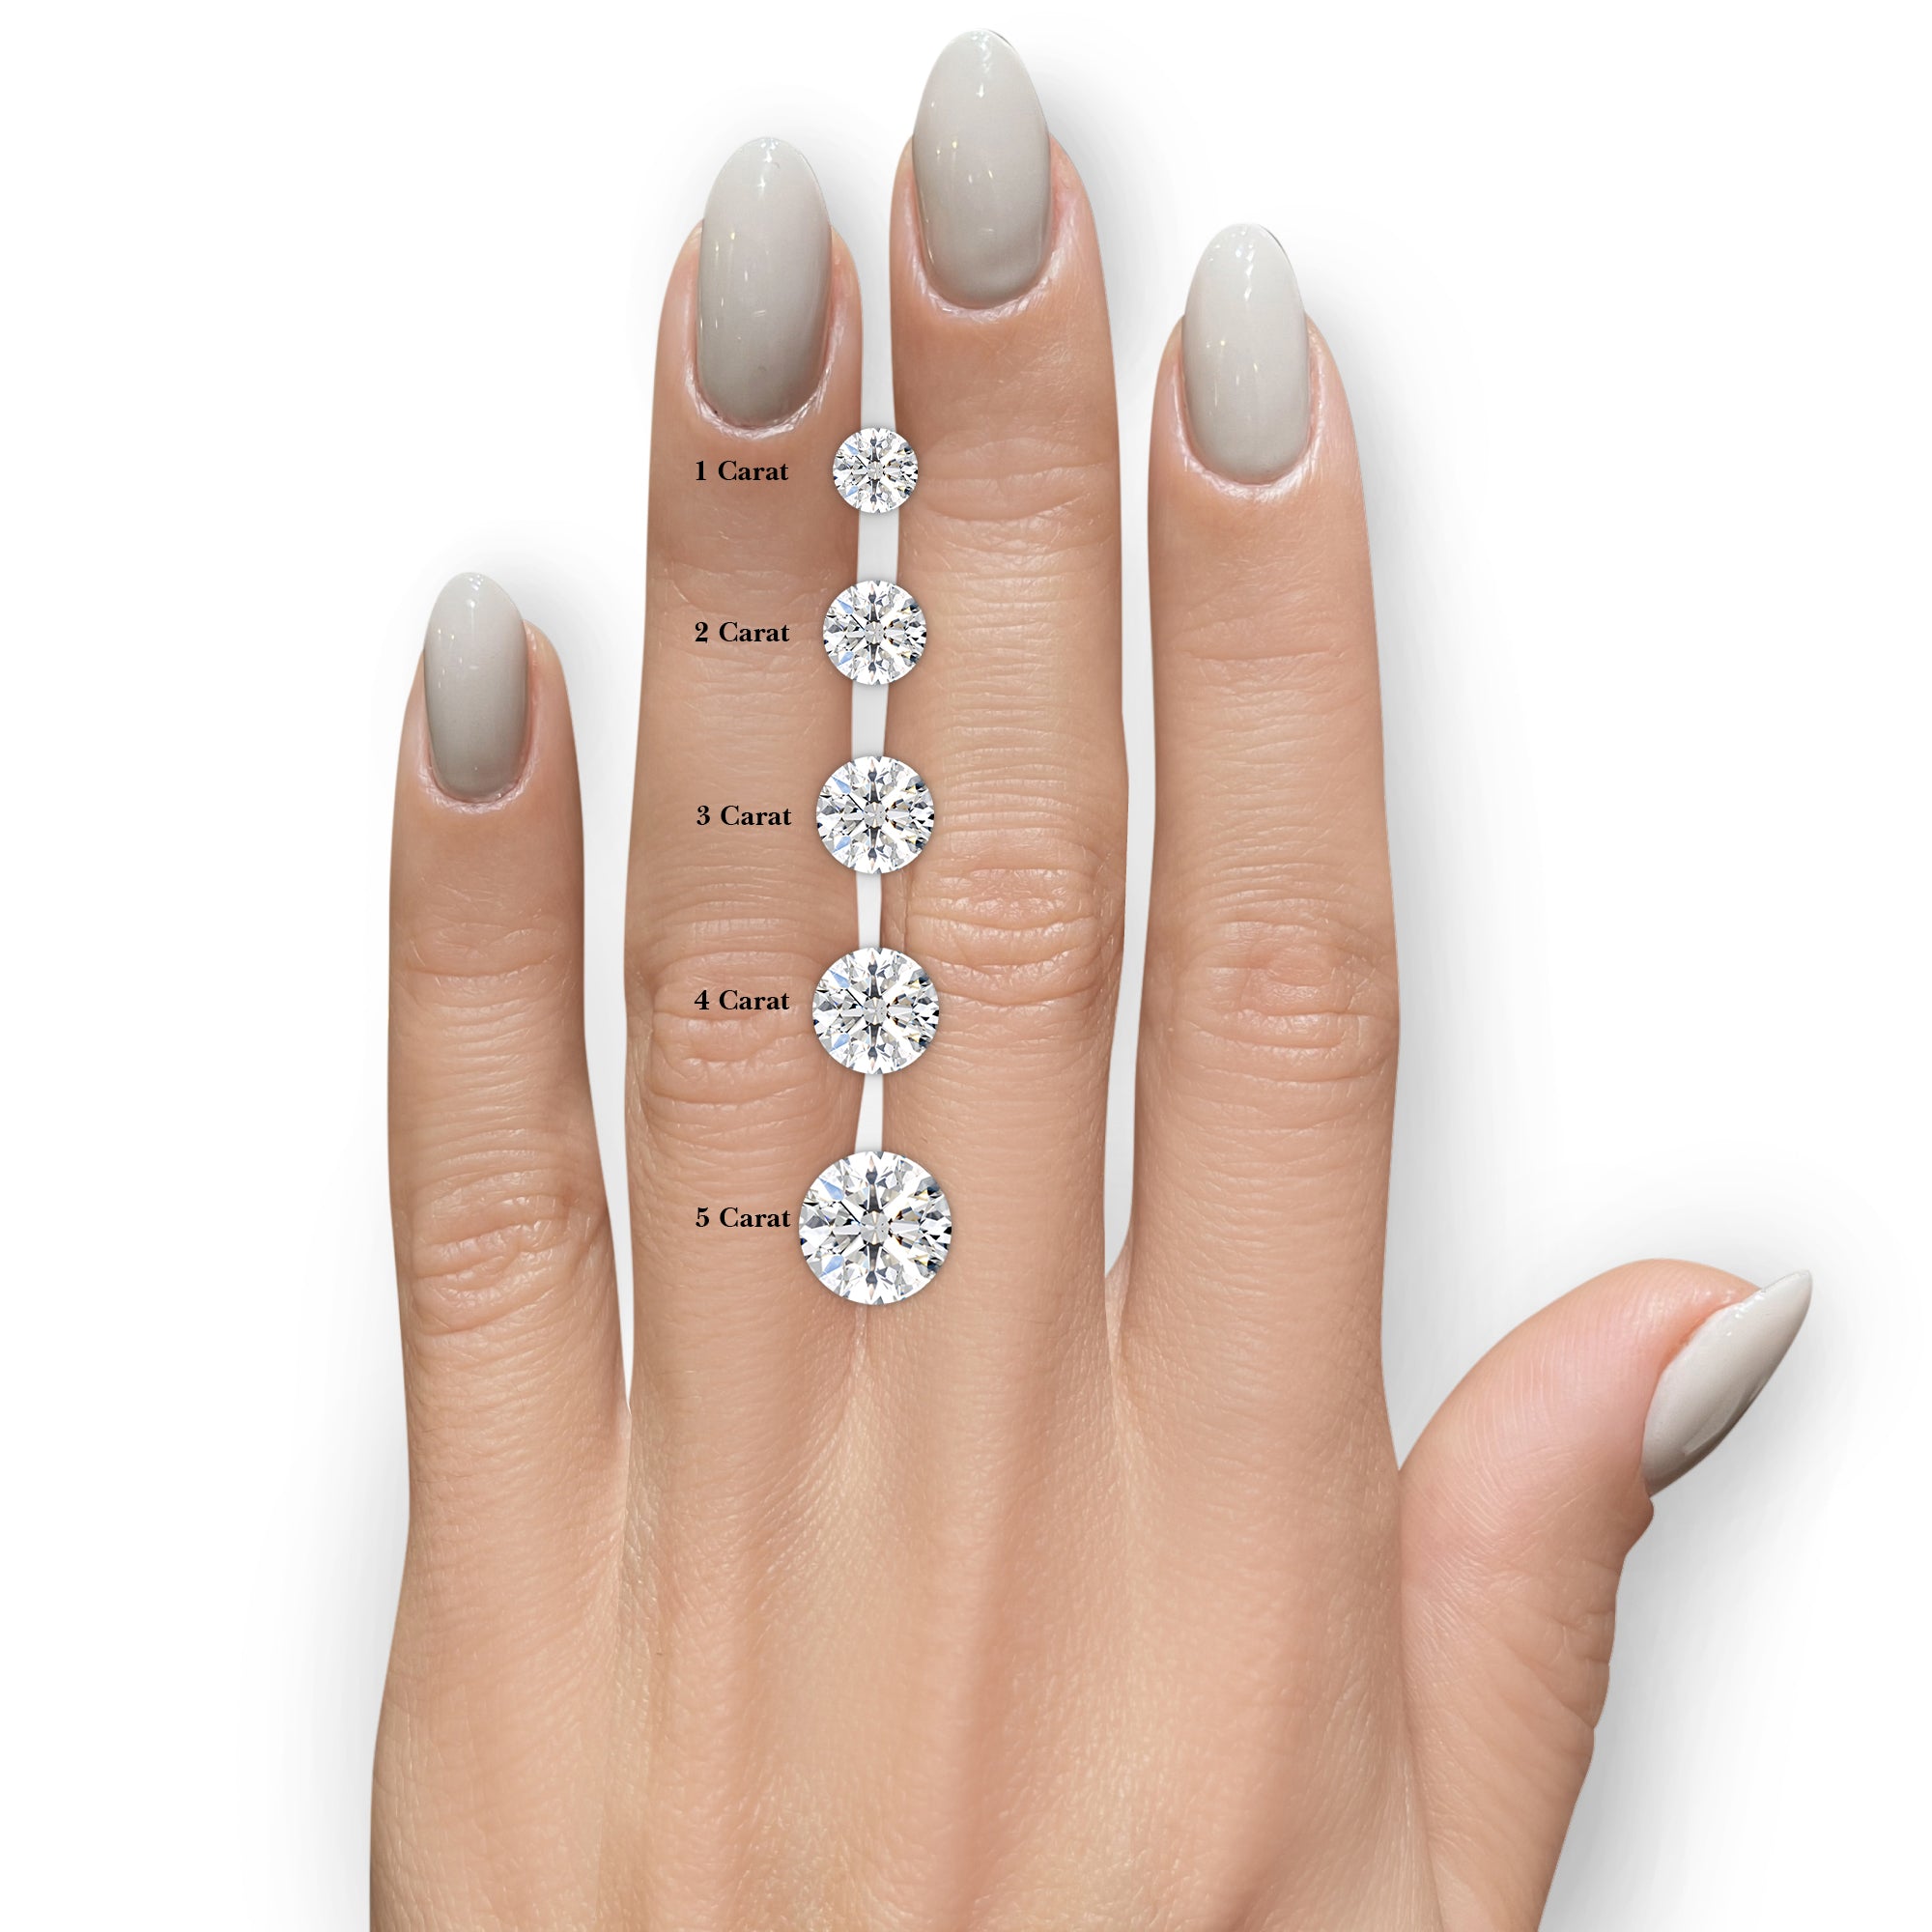 Makenzi Diamond Engagement Ring -Platinum